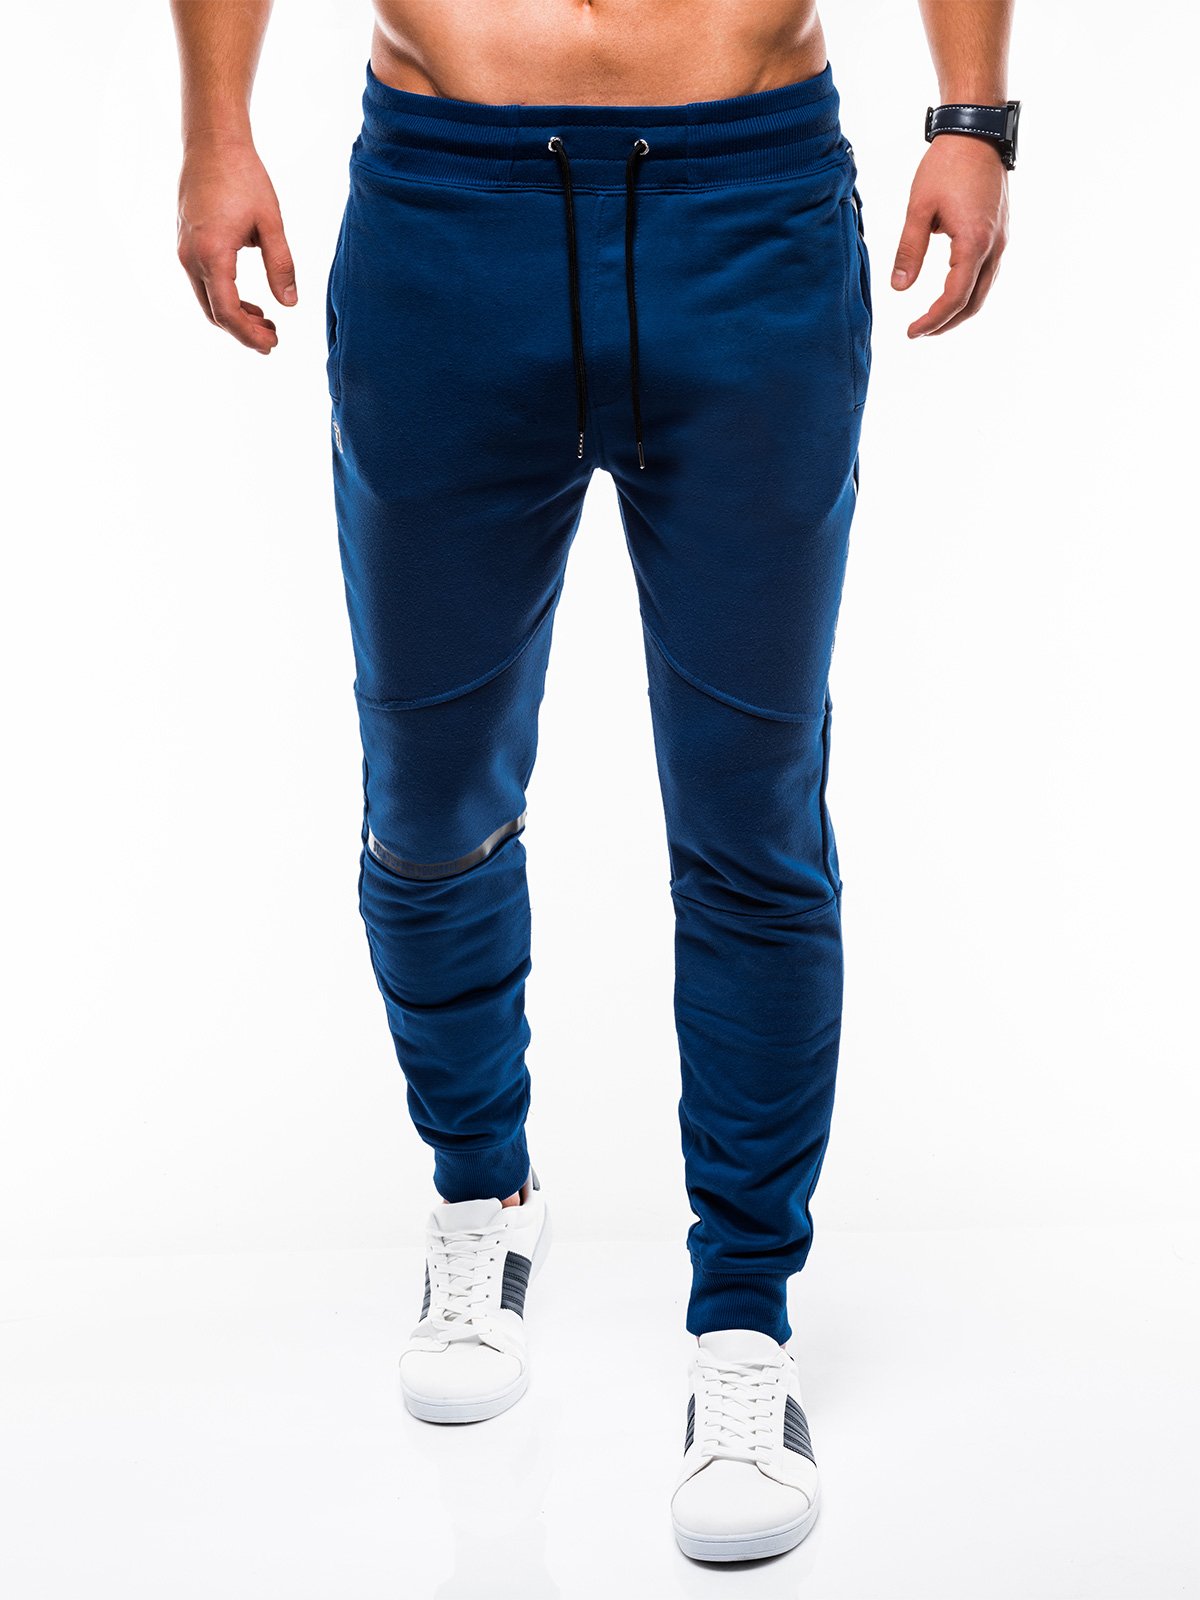 Men's sweatpants P743 - dark blue | MODONE wholesale - Clothing For Men